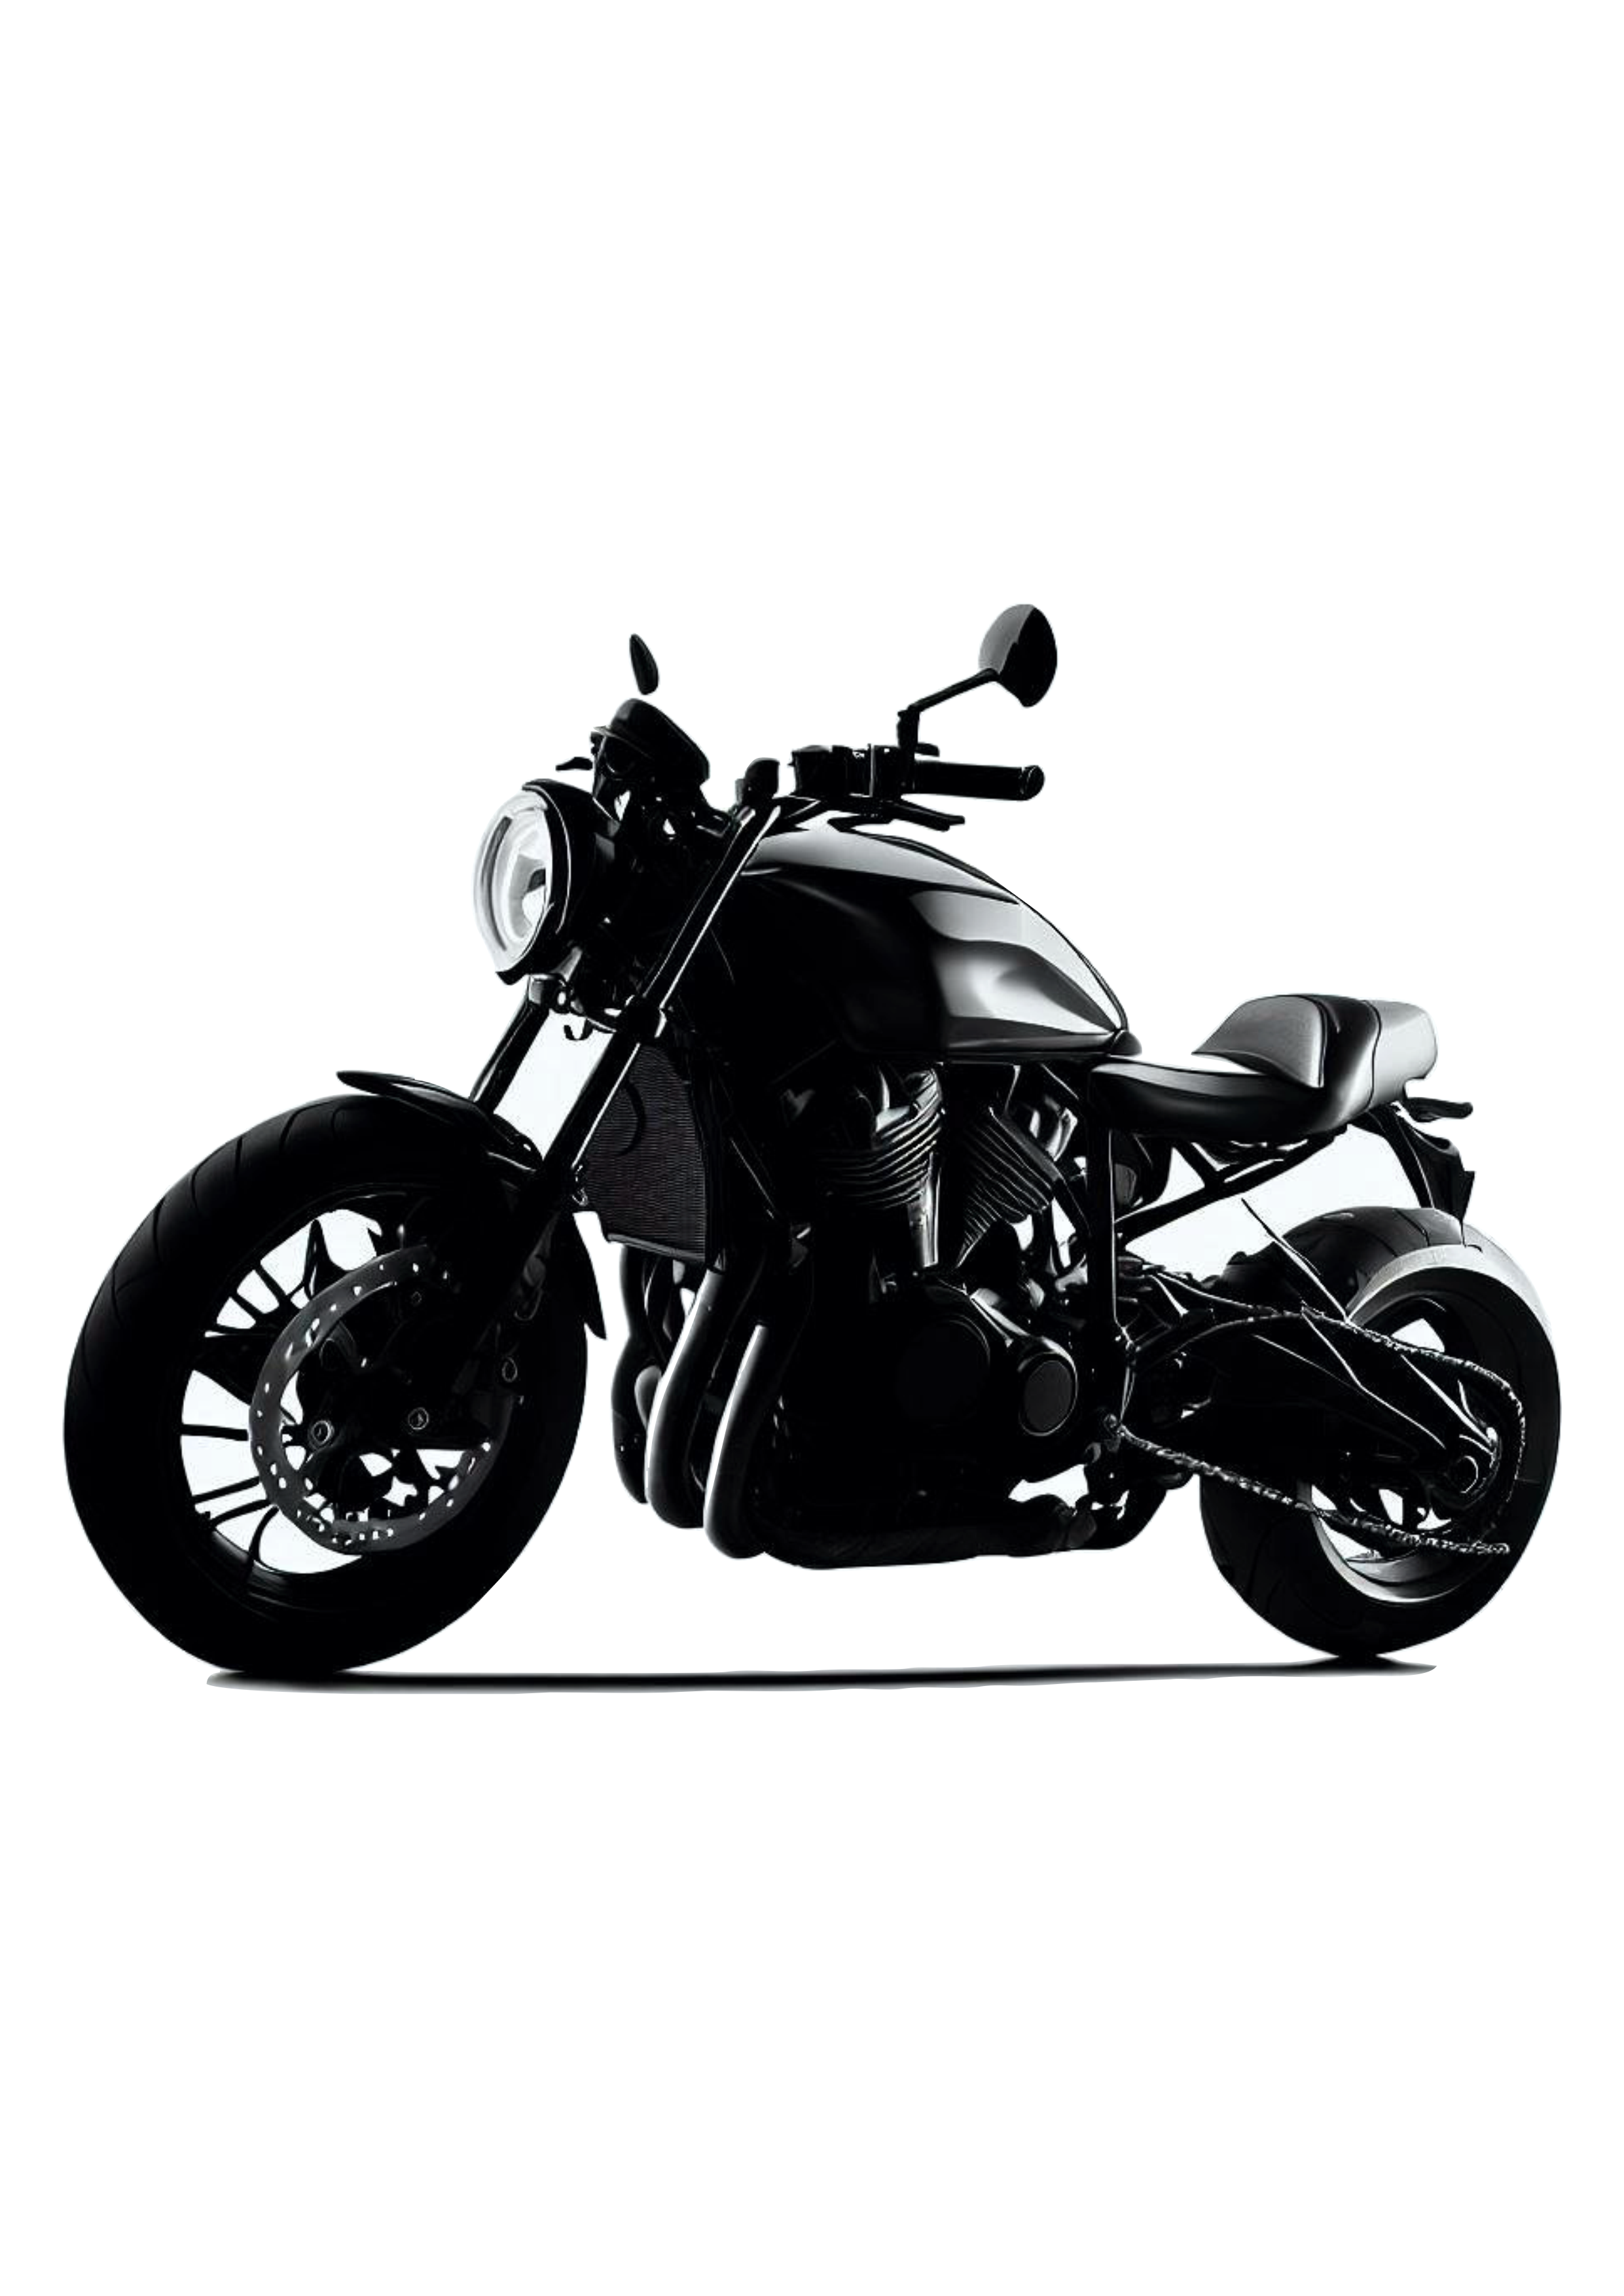 Moto esportiva imagem conceitual veículo automotivo acessórios de motocicleta preço png